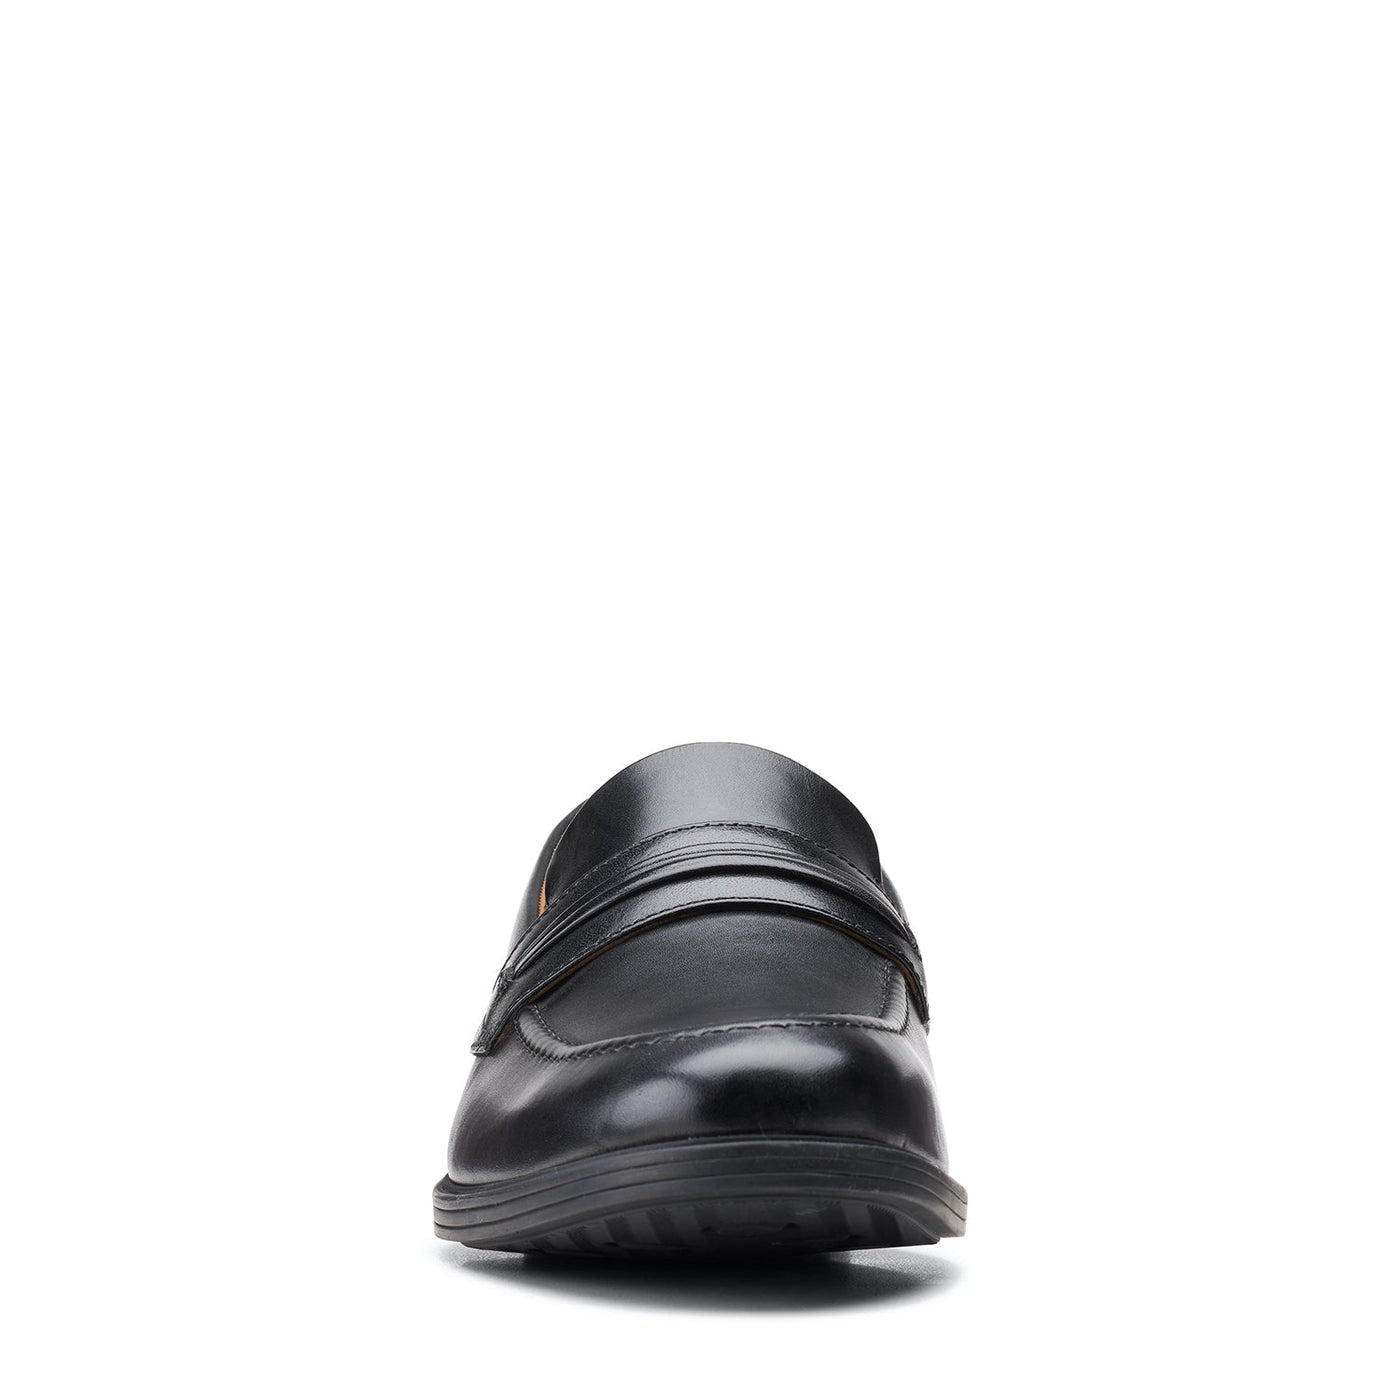 Mens - Whiddon Loafer Black Leather